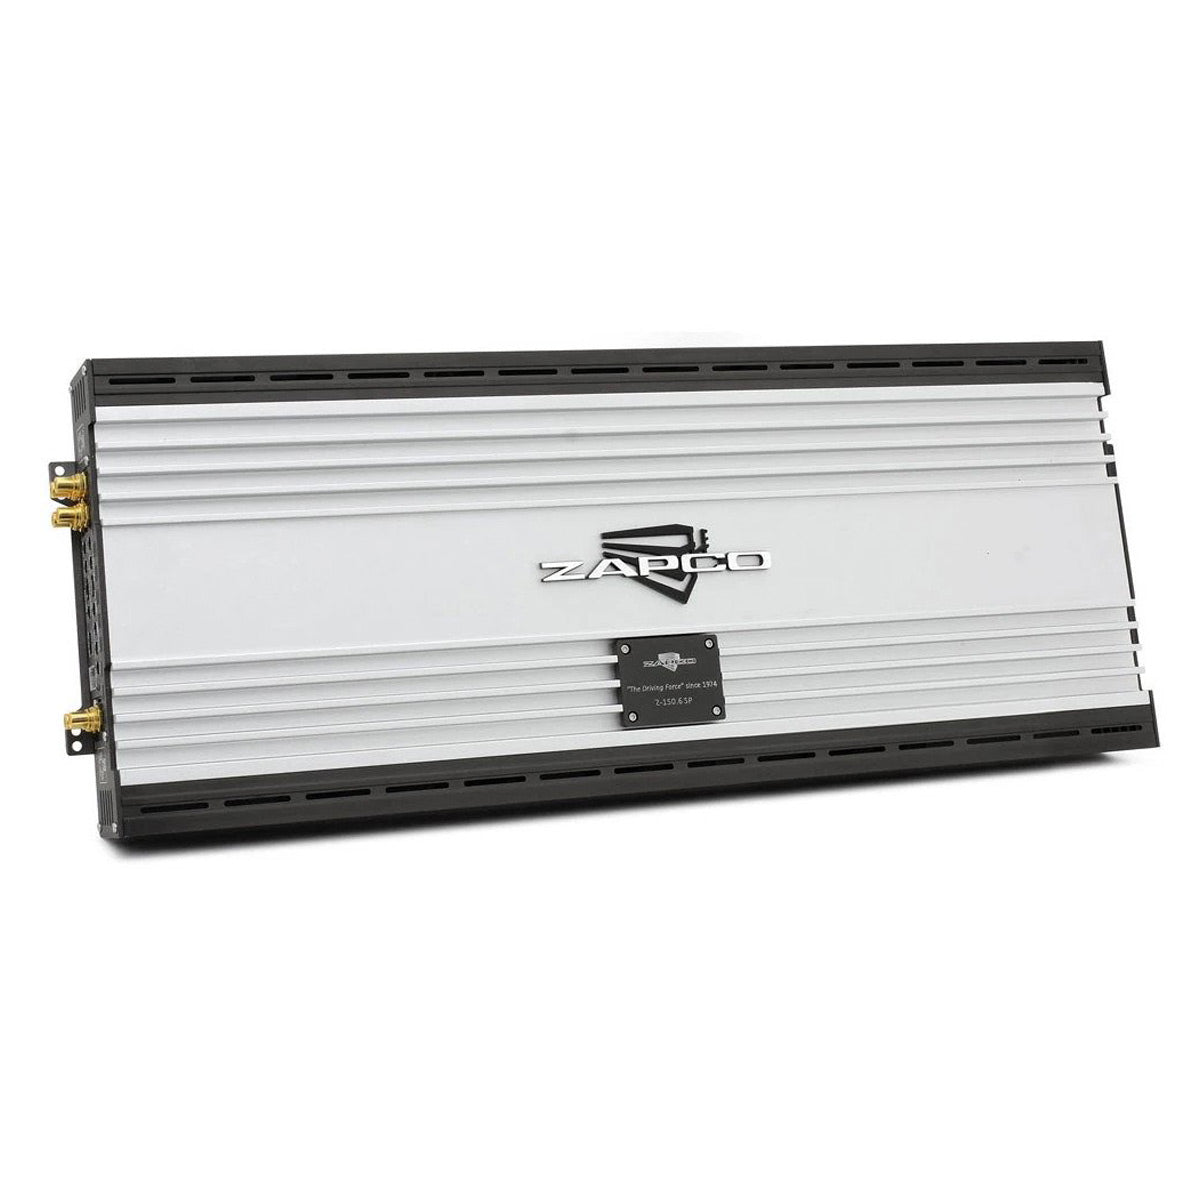 Zapco Z-150.6 SP 6-Channel 1650-Watt Super Power Class AB Amplifier